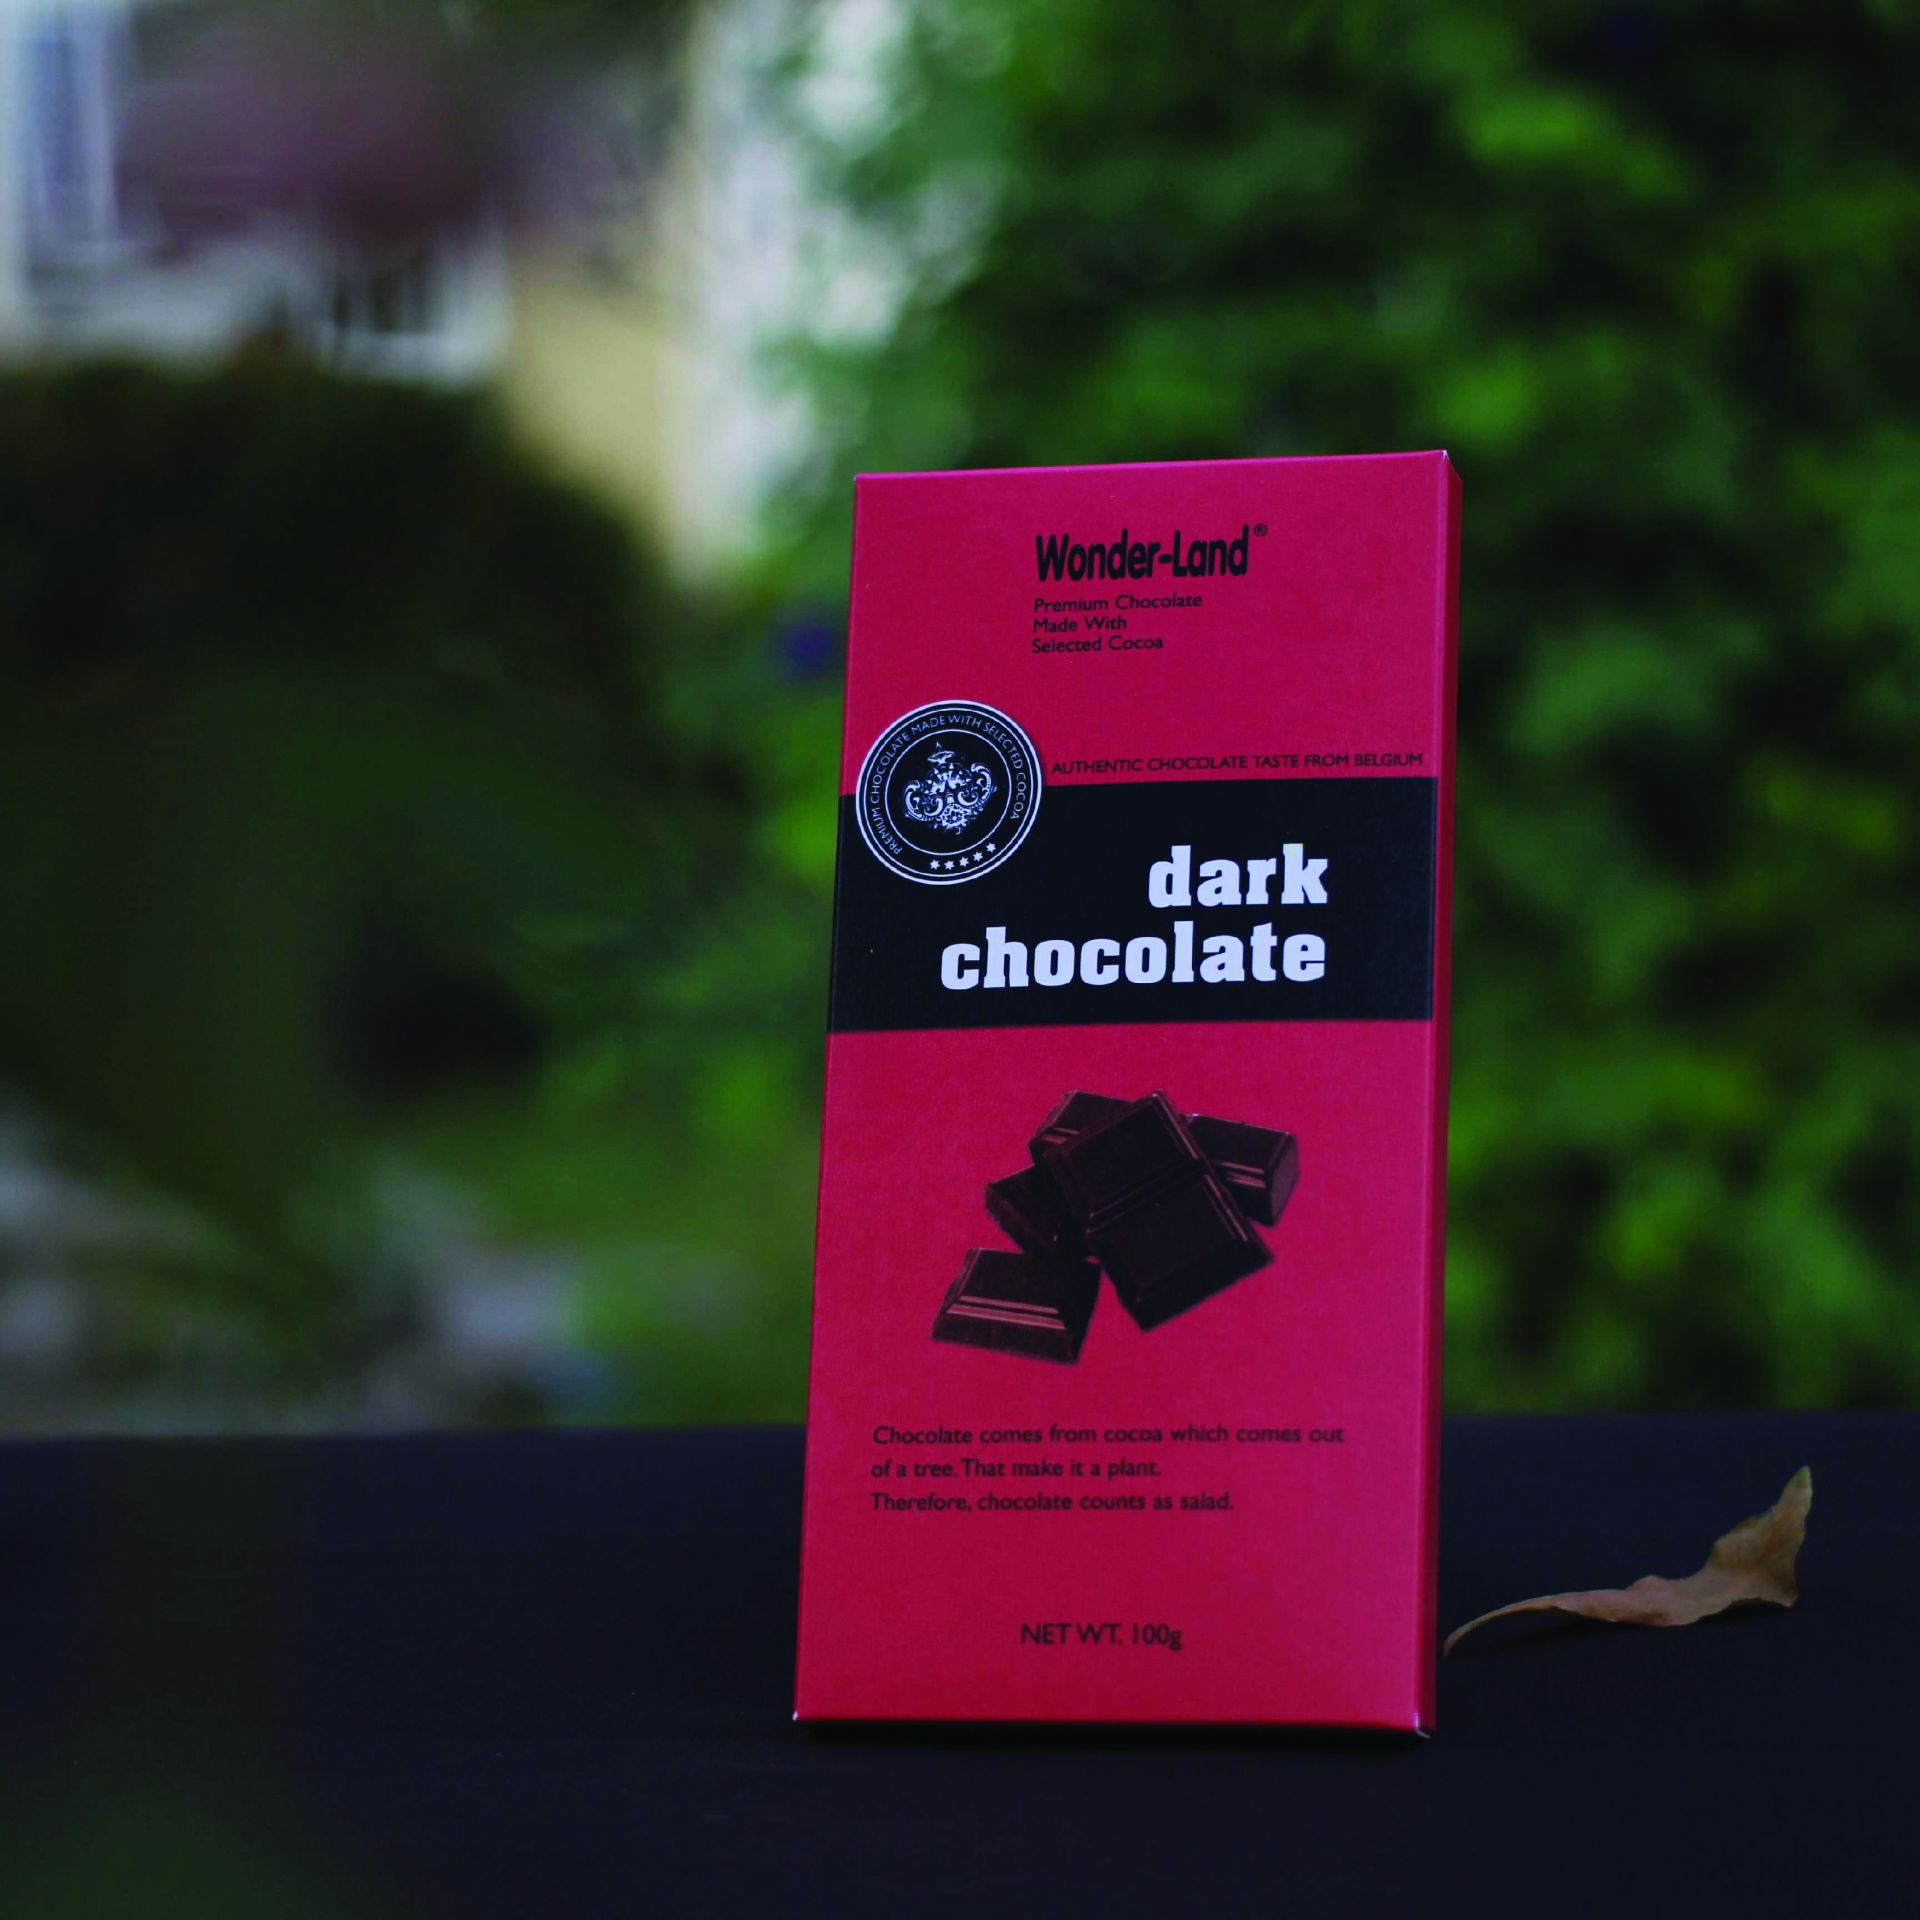 Dark Chocolate wonder-land 100G